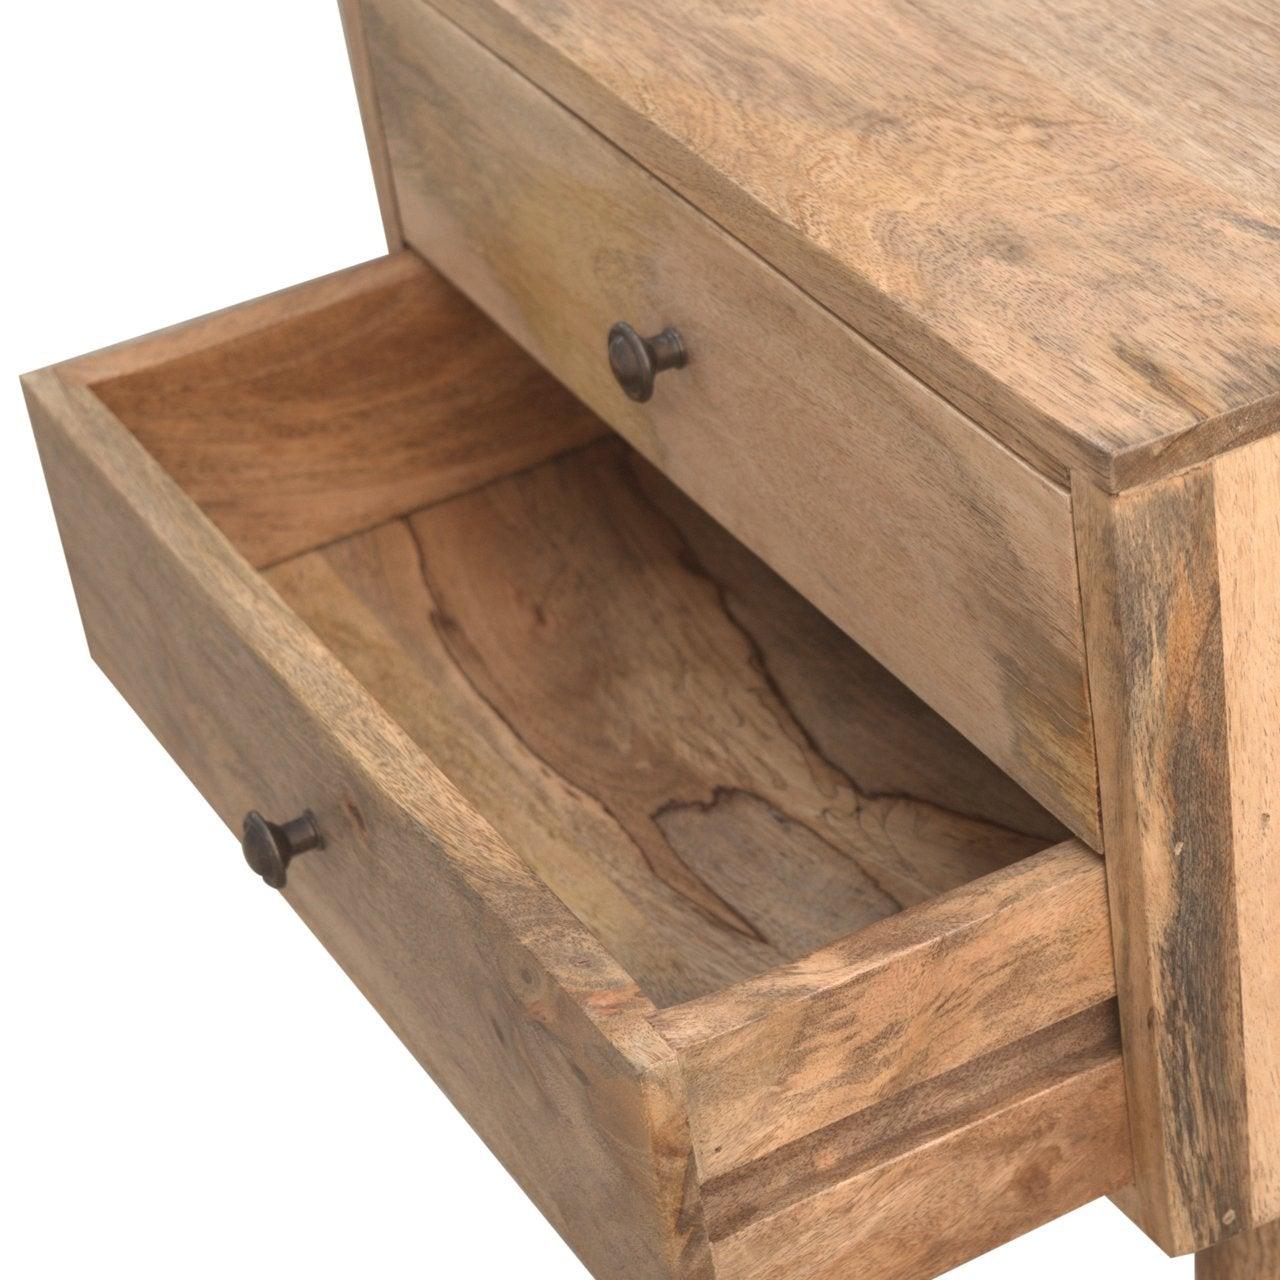 Modern solid wood bedside table - crimblefest furniture - image 8